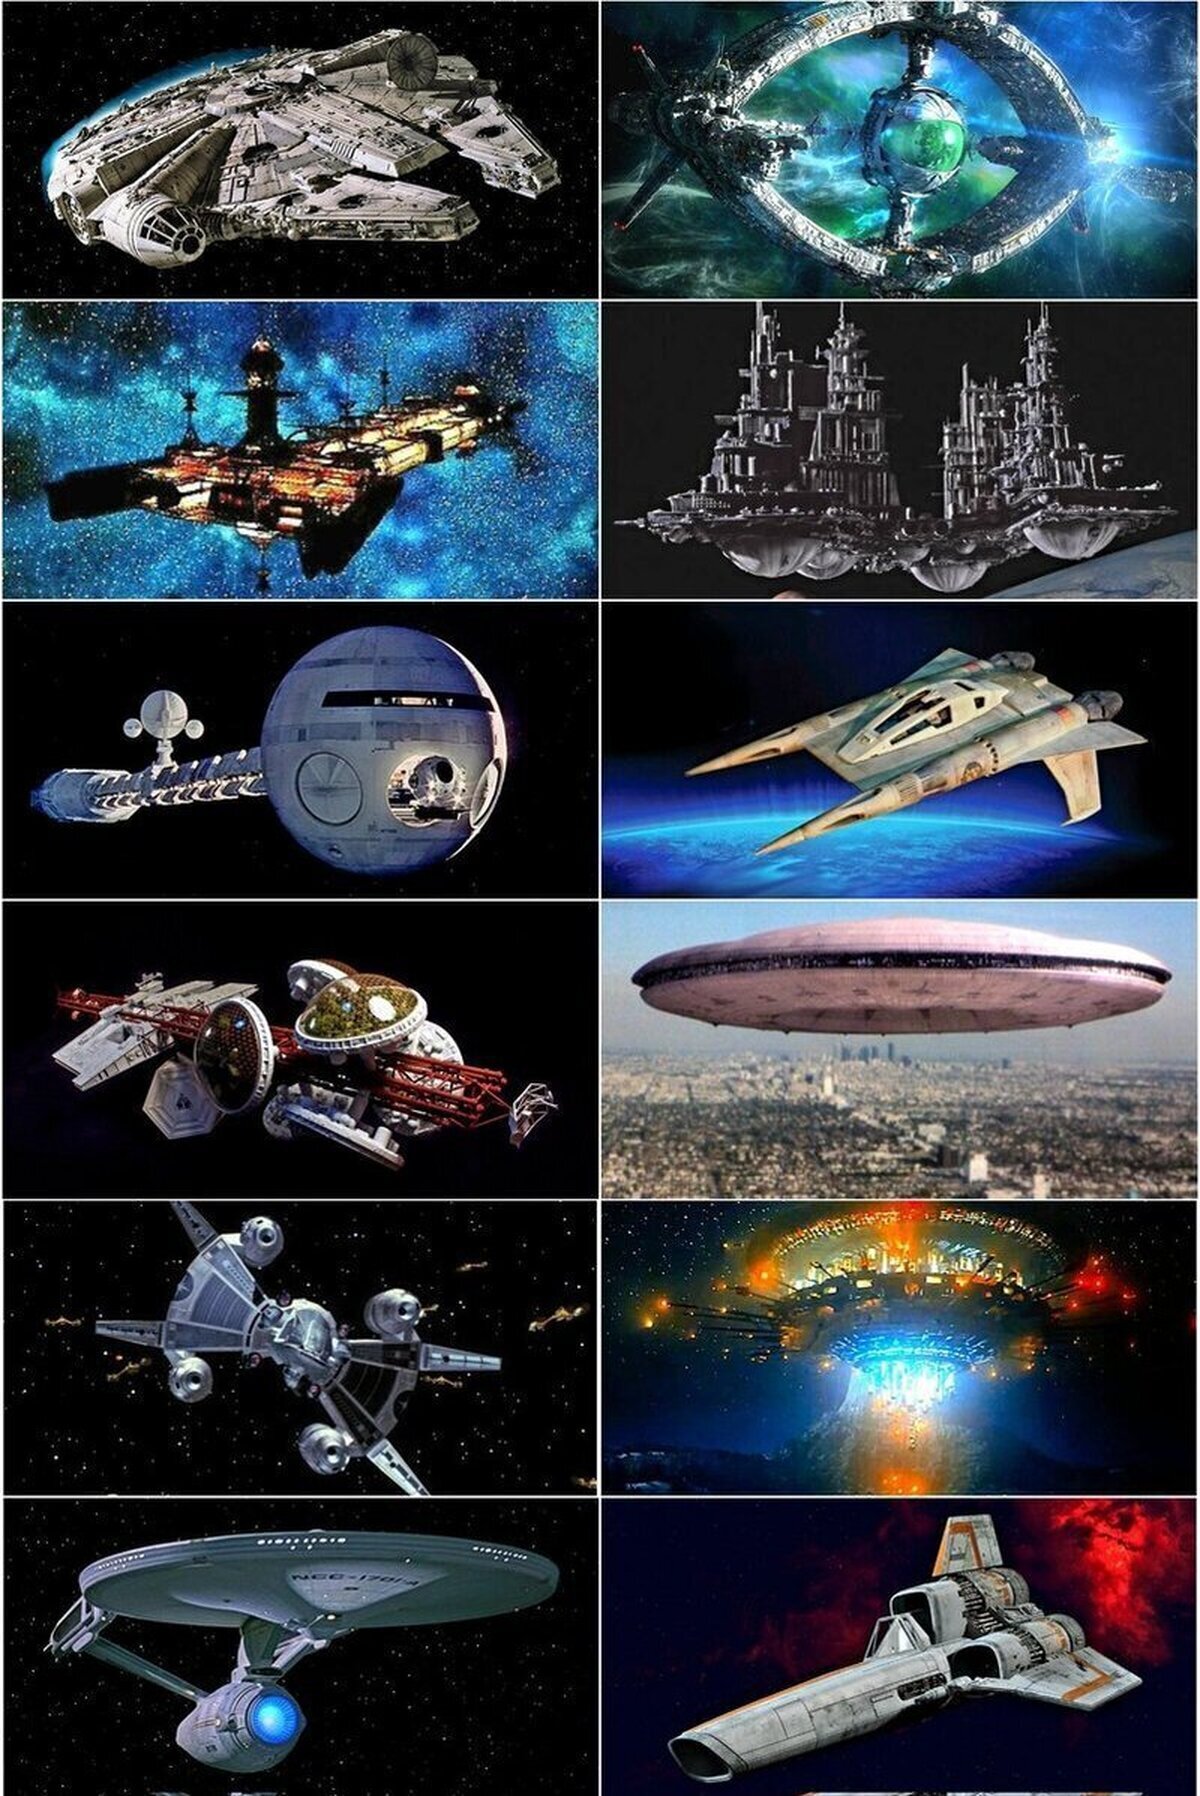 Naves espaciales que marcaron mi infancia.¿Las reconoces?  @doctorfrusna